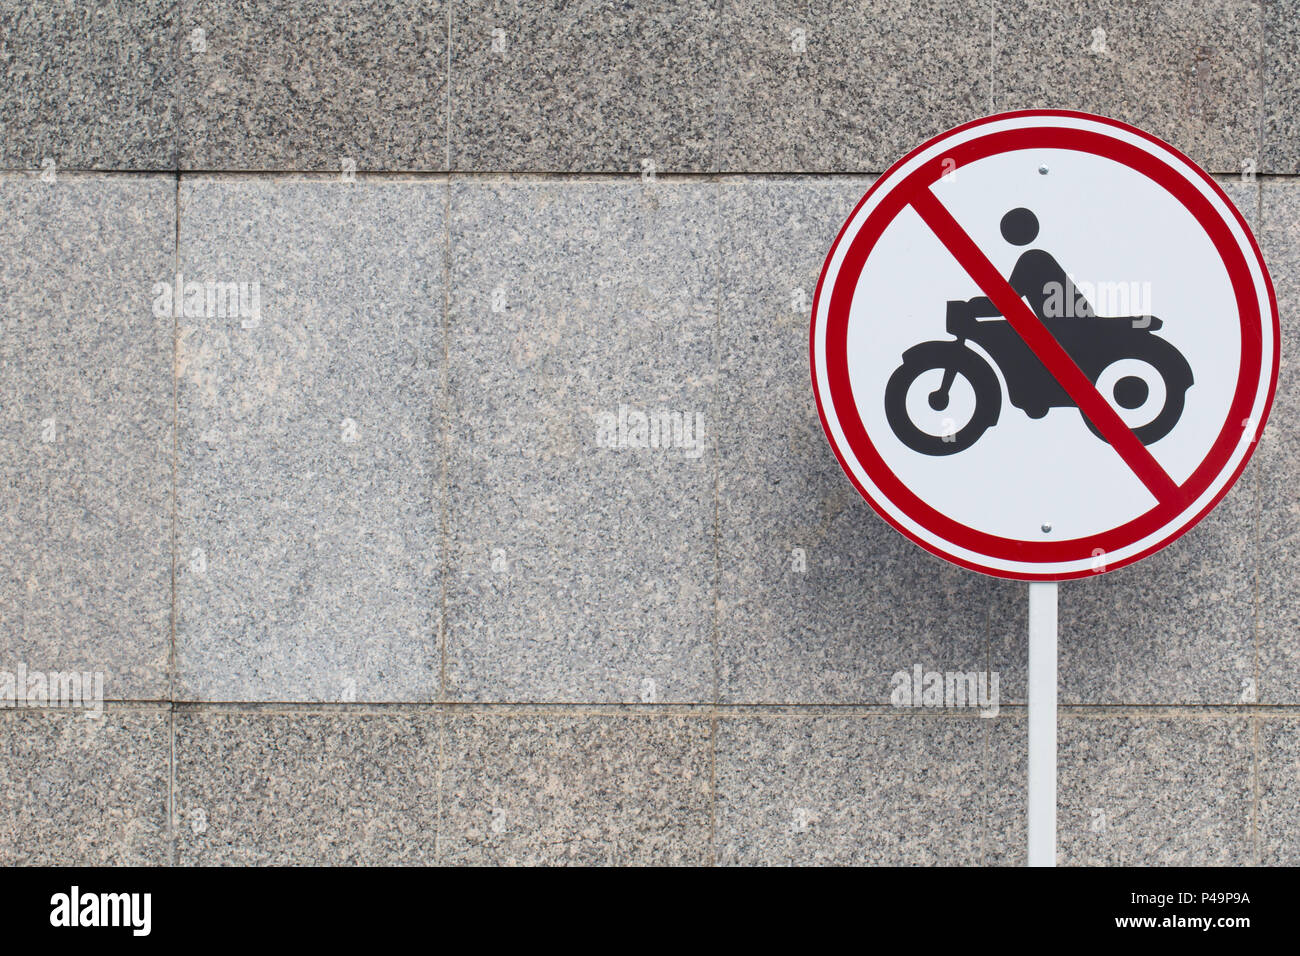 Знак машина и мотоцикл перечеркнутый. Запрещающие знаки для мотоциклистов. Дорожный знак с мотоциклом и автомобилем. Дорожный знак перечеркнутый автомобиль и мотоцикл. Знак мотоцикл в круге перечеркнутый.